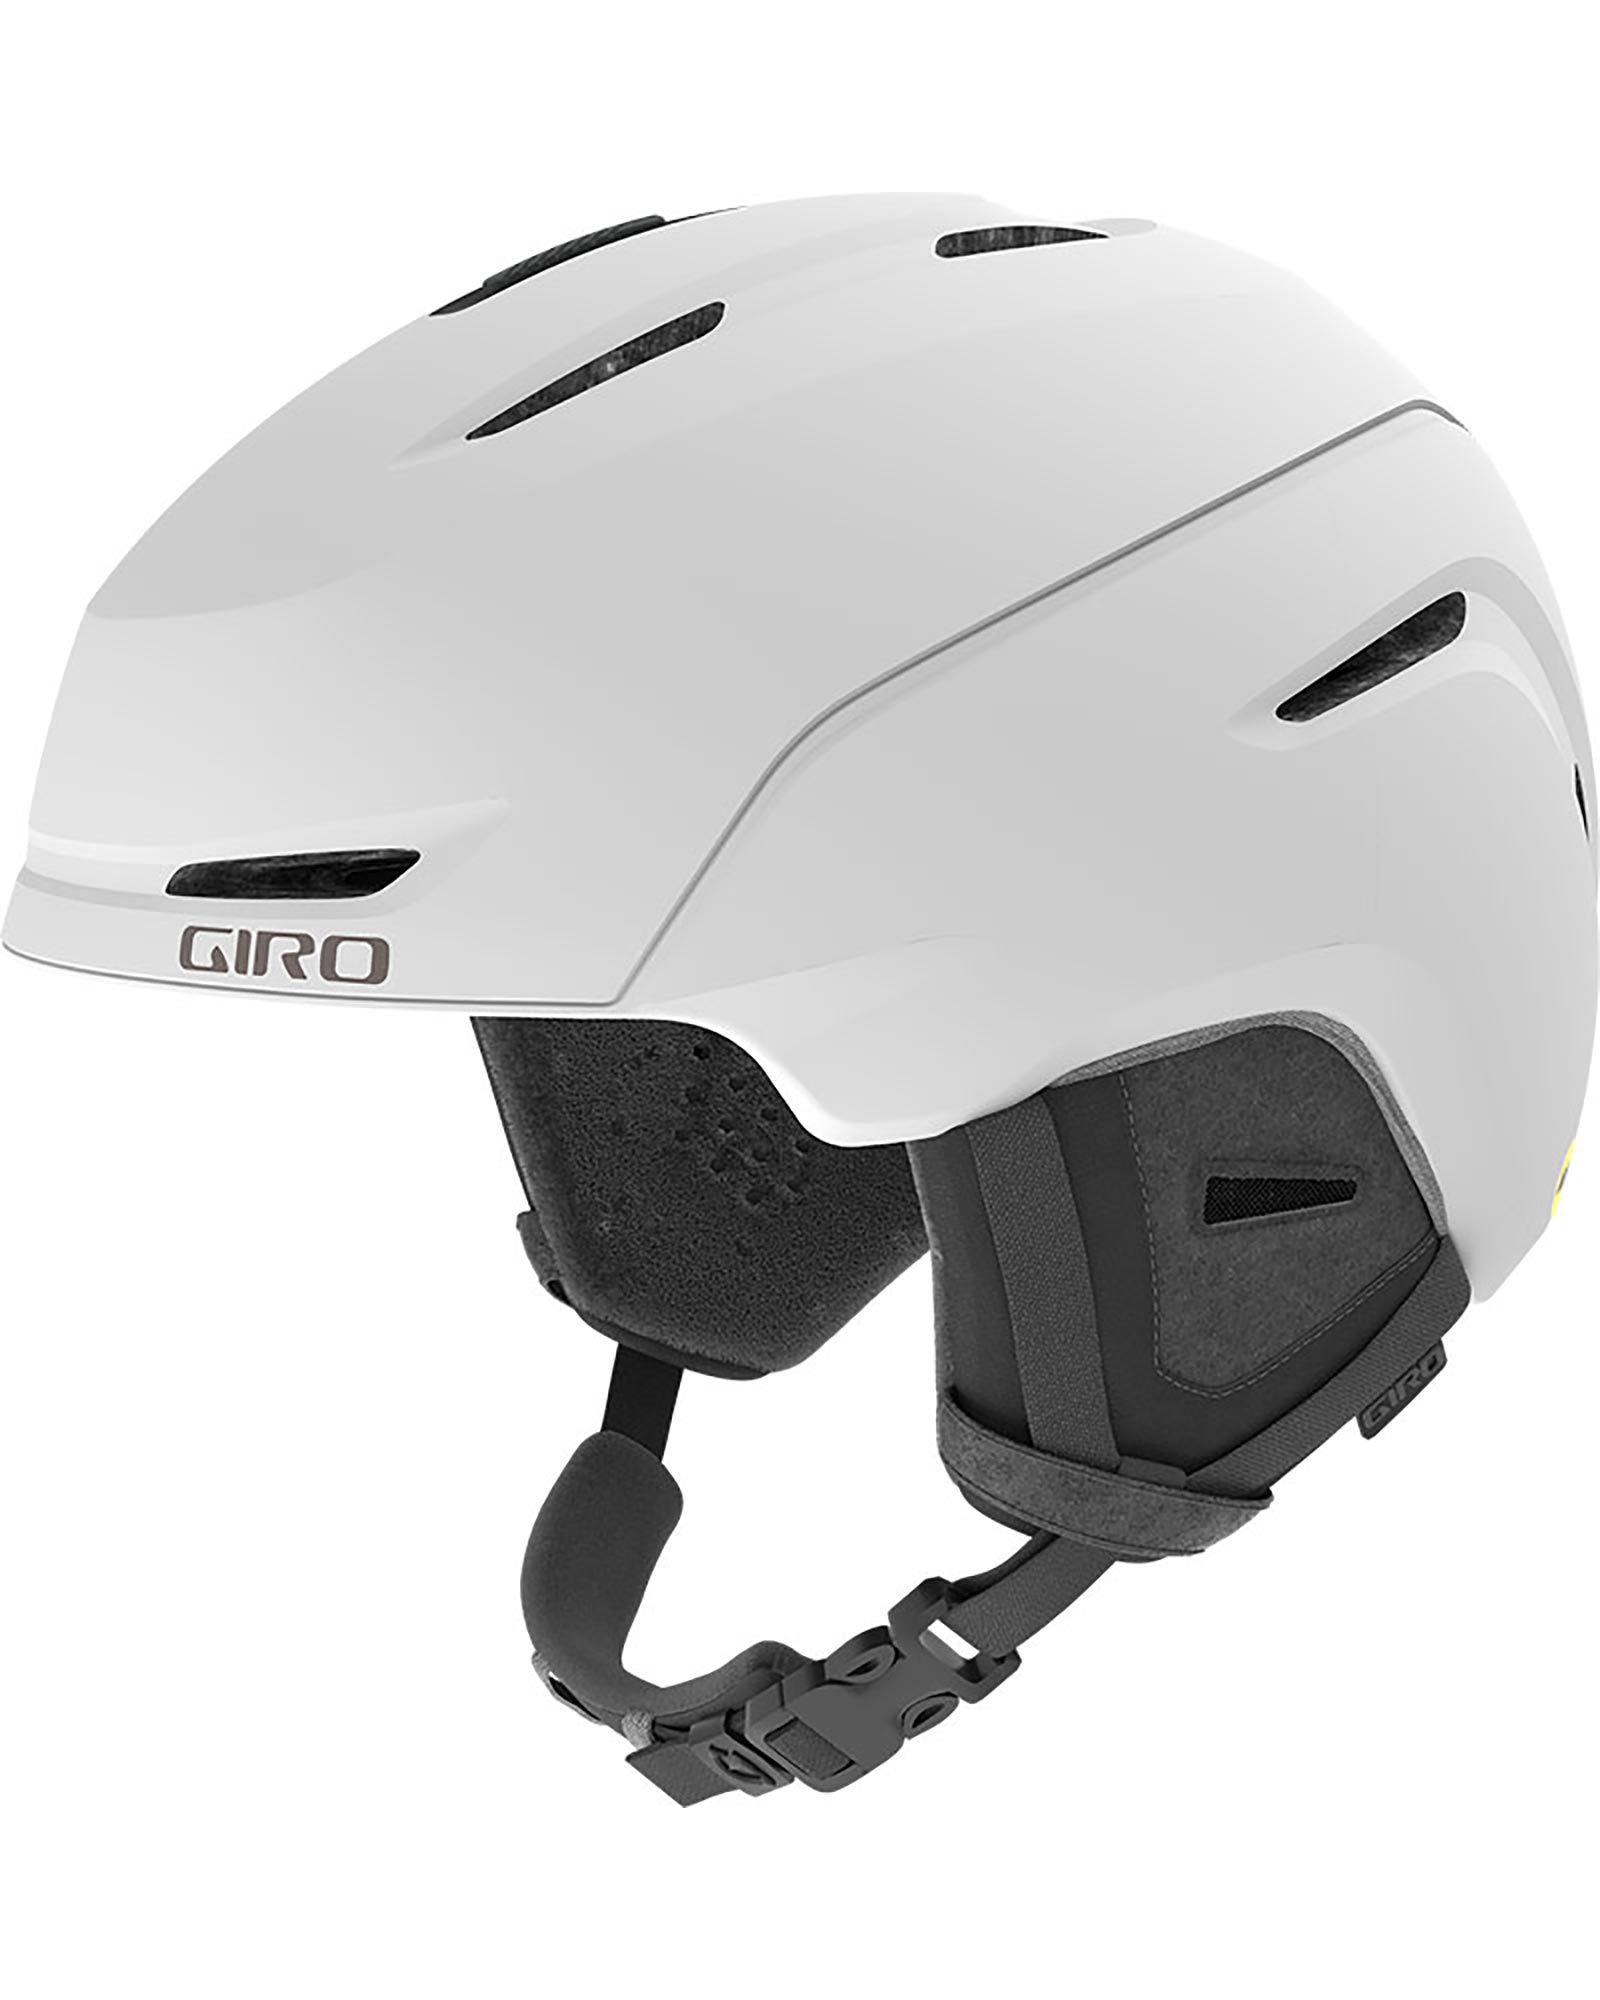 Giro Avera MIPS Women's Helmet